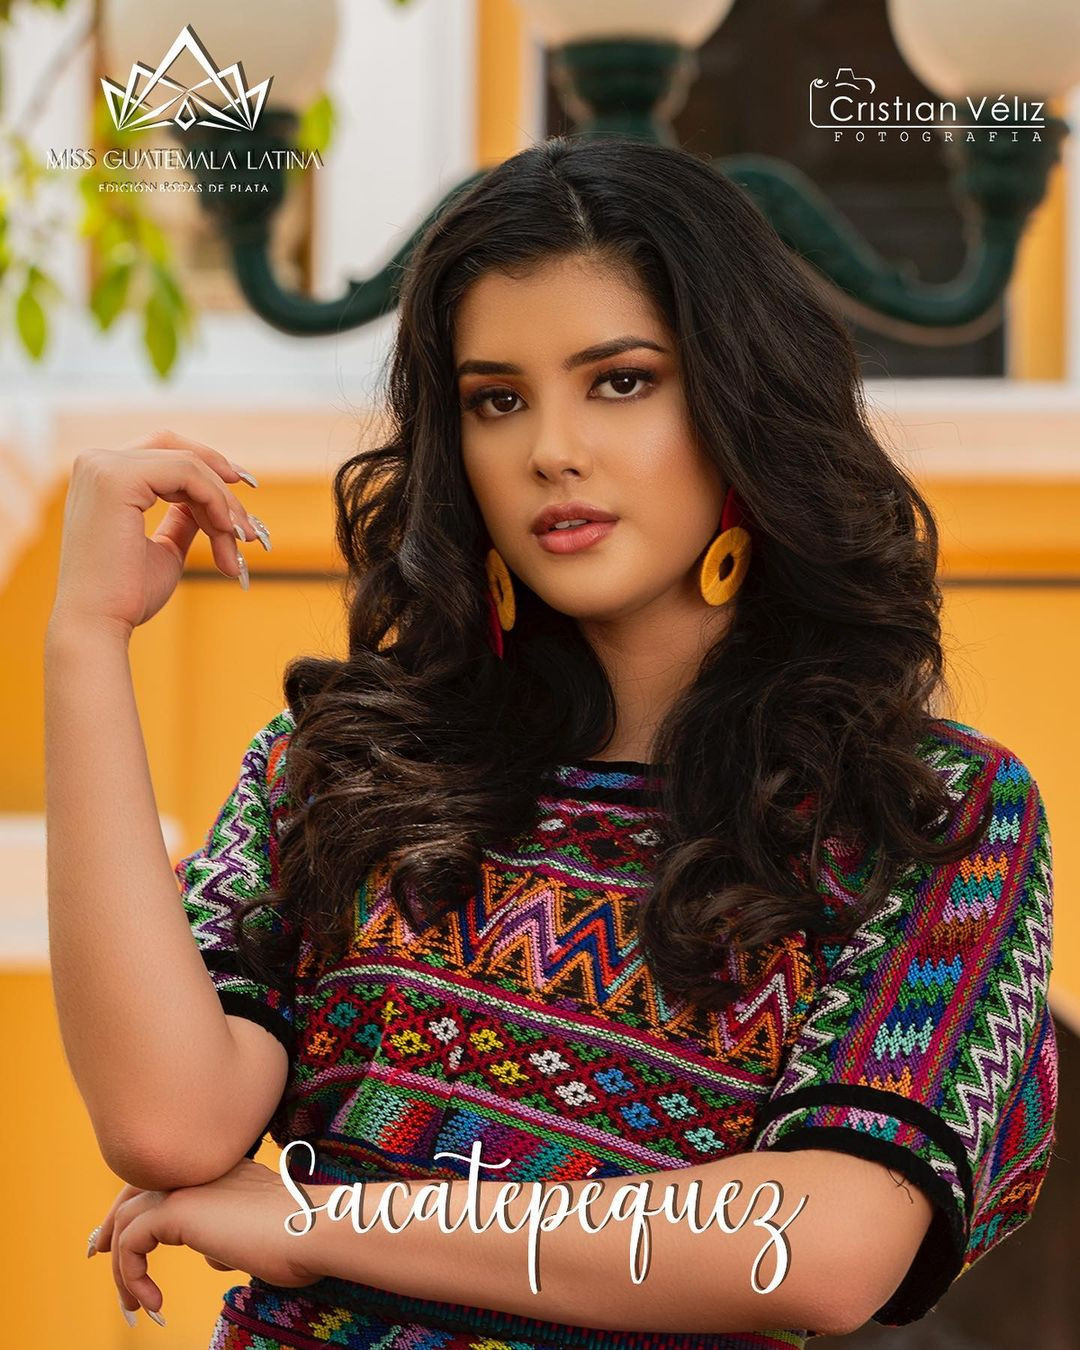 Latina - candidatas a miss guatemala latina 2021. final: 30 de abril. - Página 2 B2gihX